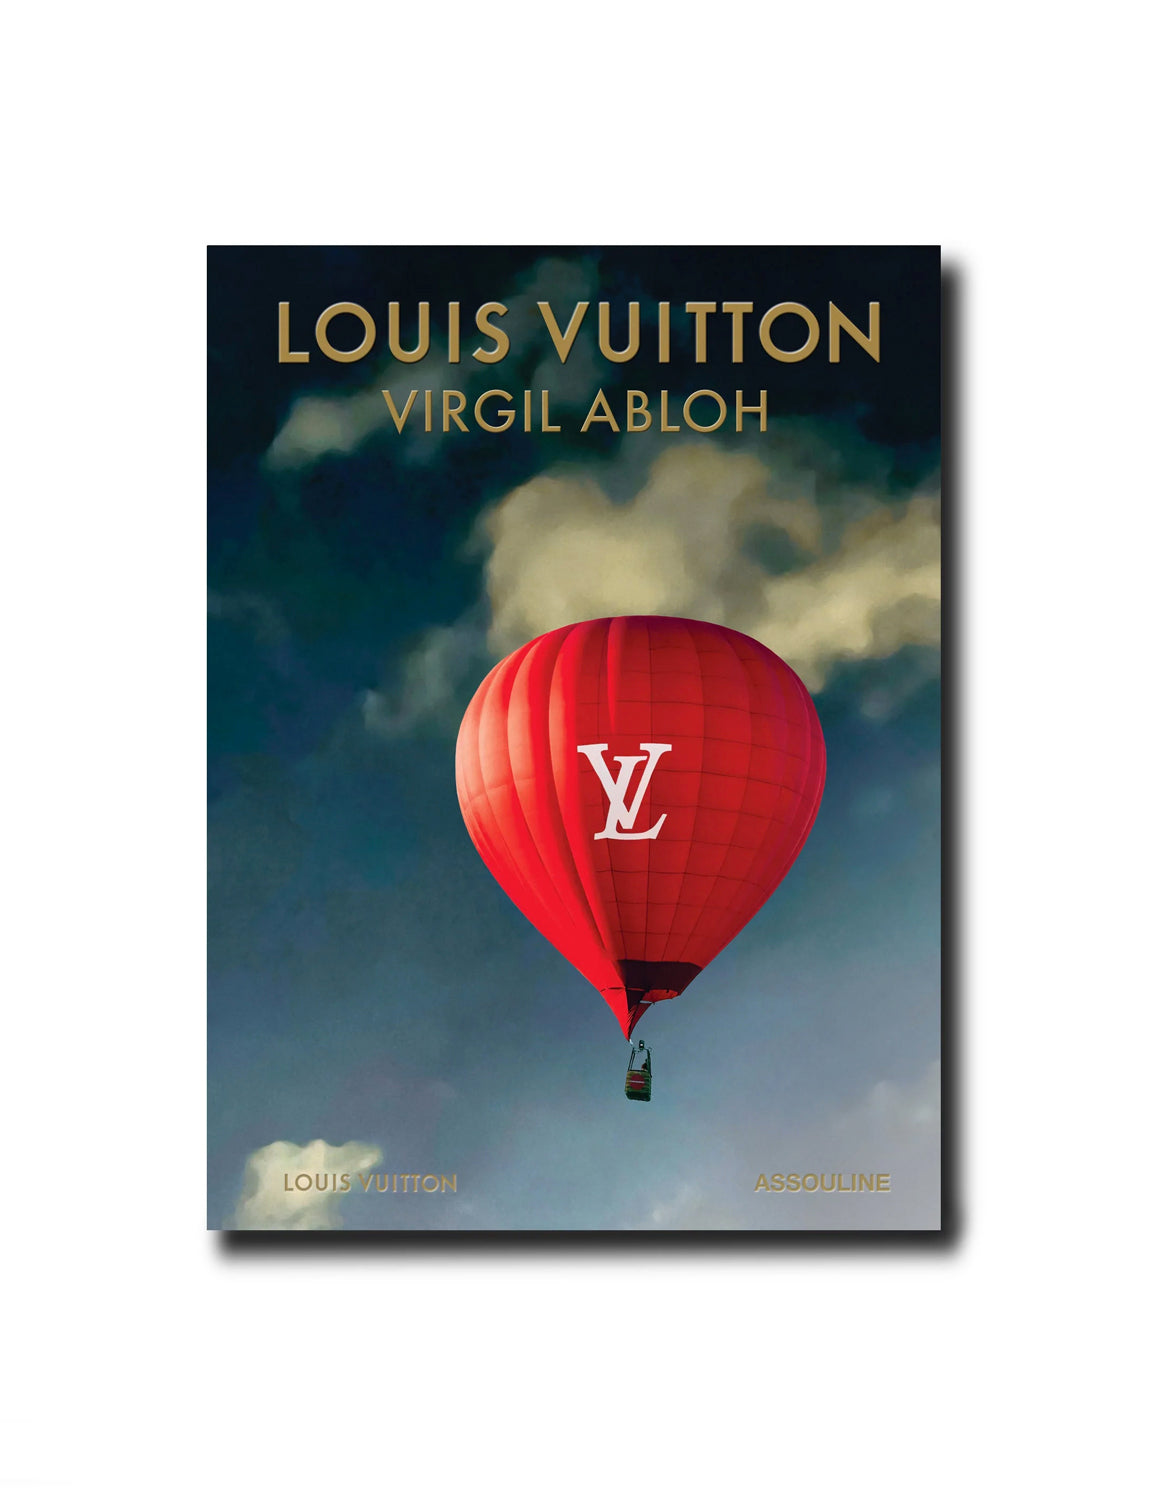 Louis Vuitton Presents Men's FW22 by Virgil Abloh